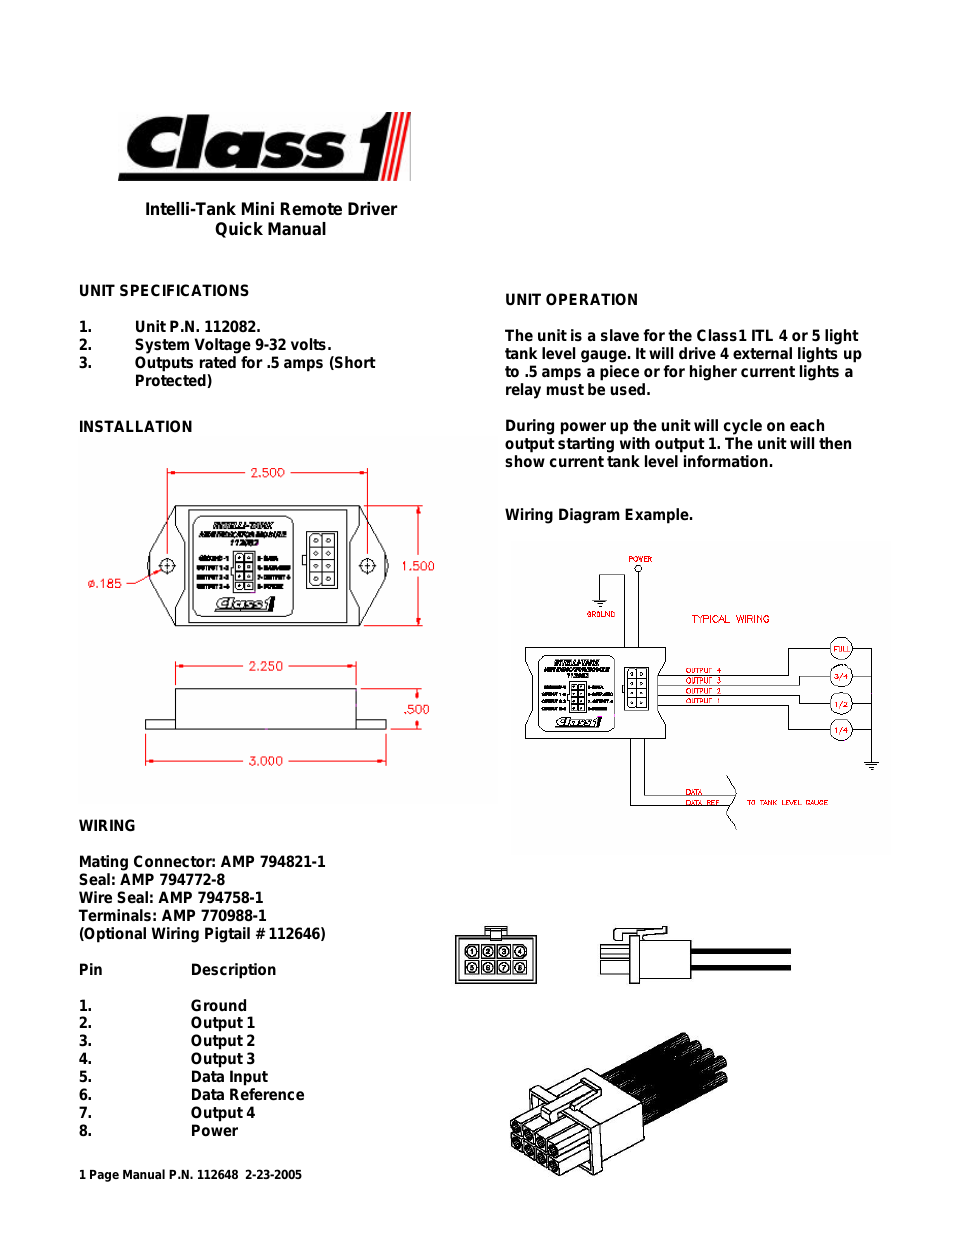 ITL Mini Remote Driver one-page_manual 112648